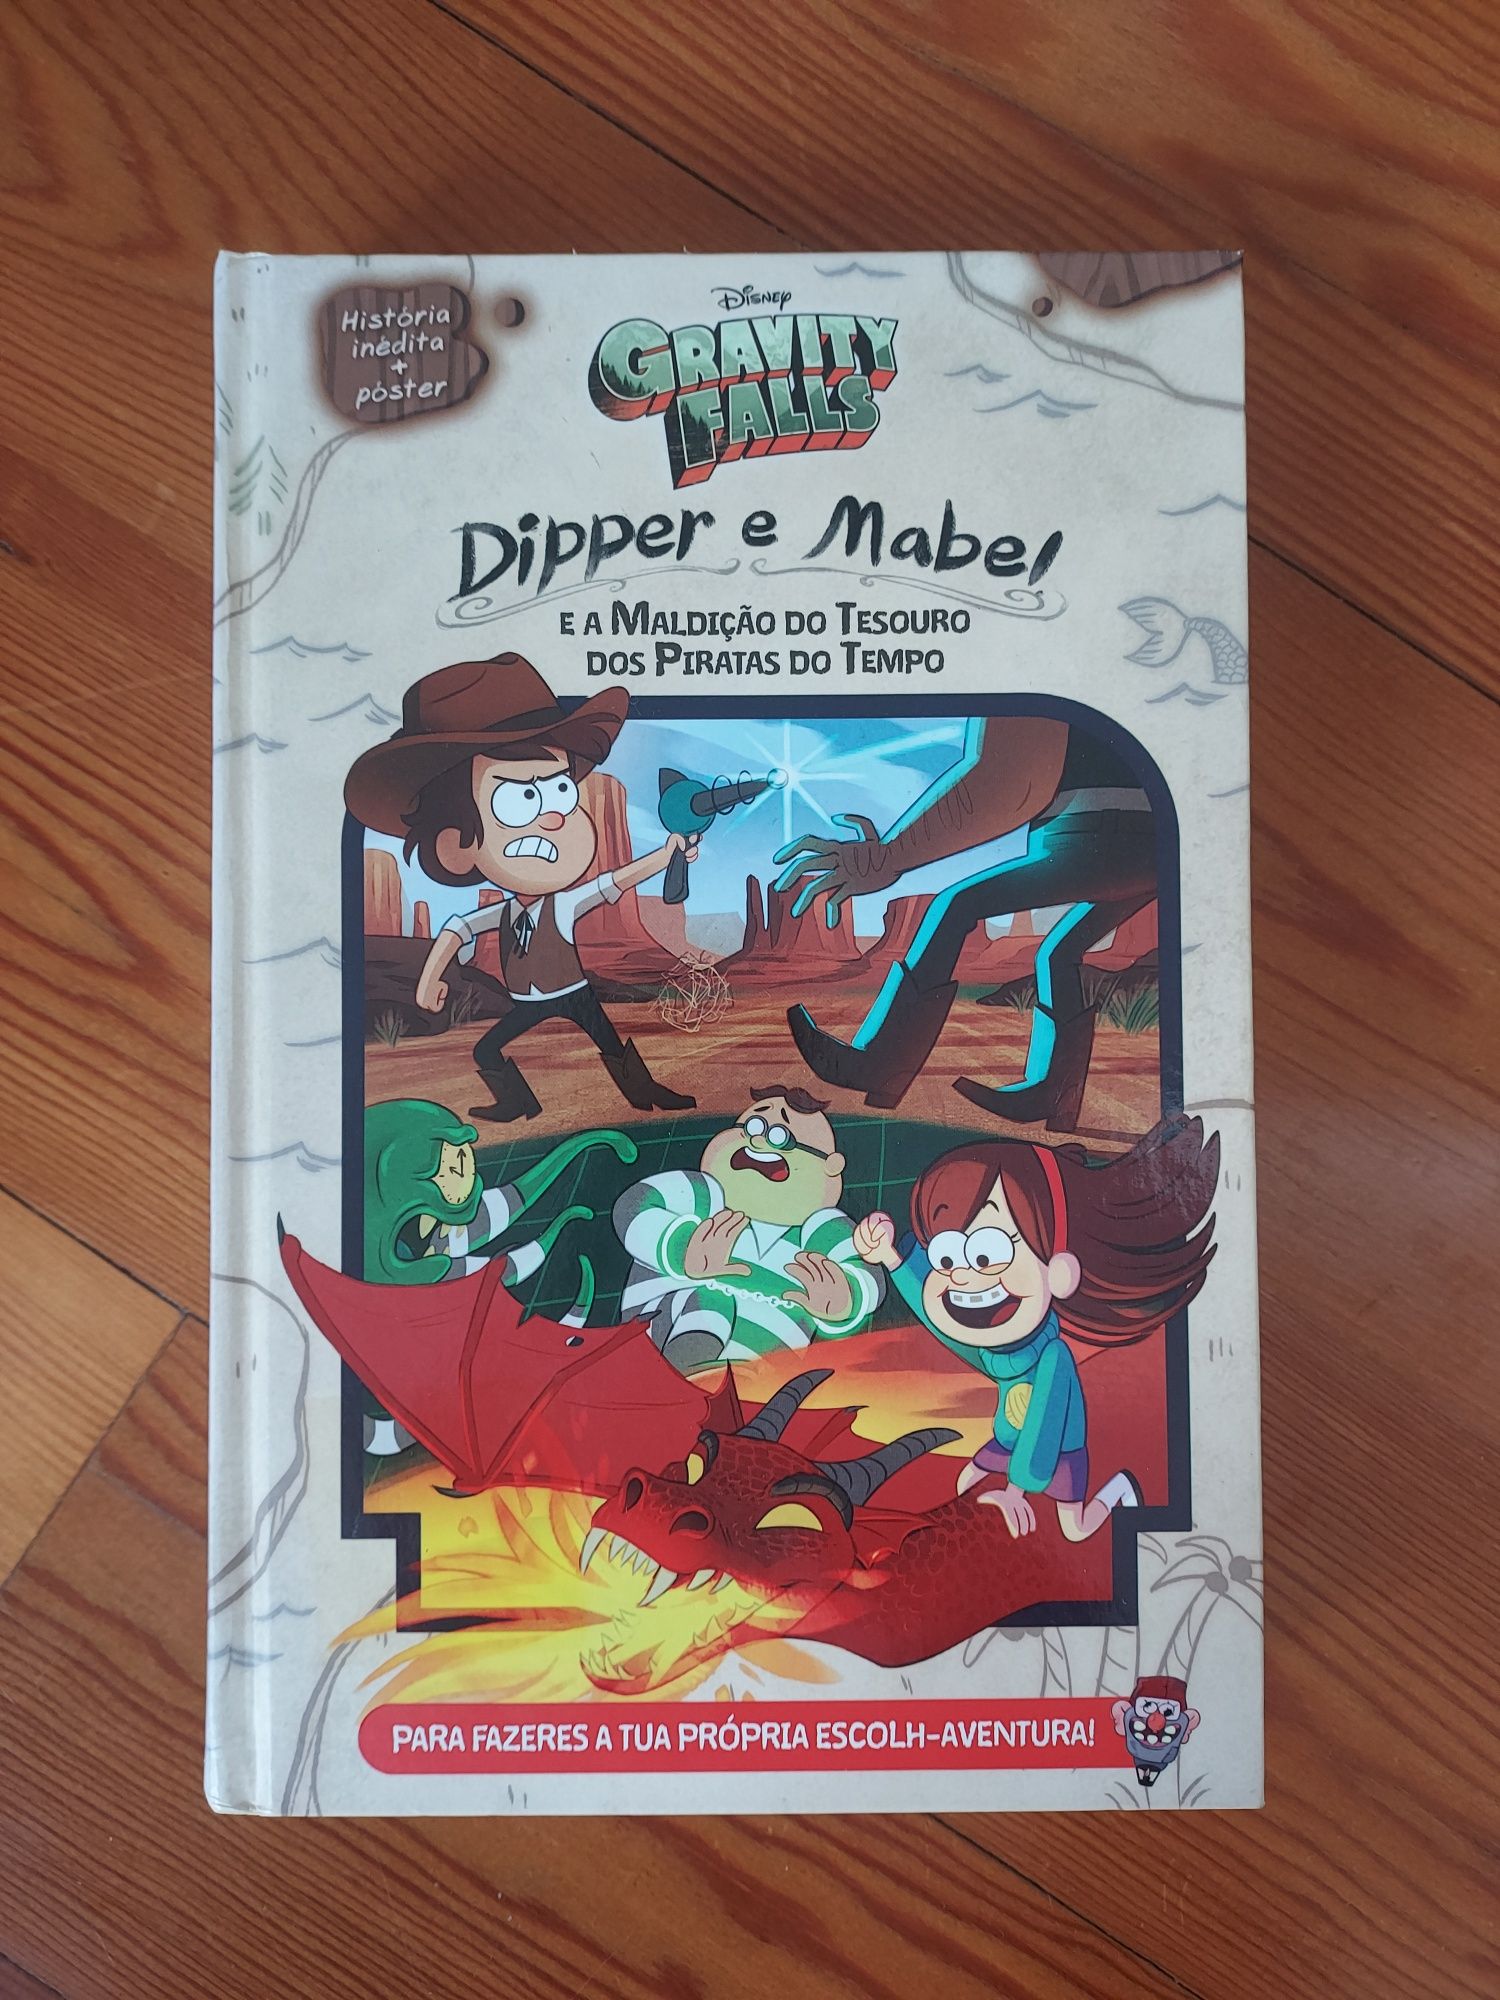 Livro: "Dipper e Mabel e a Maldição do Tesouro dos Piratas do Tempo"